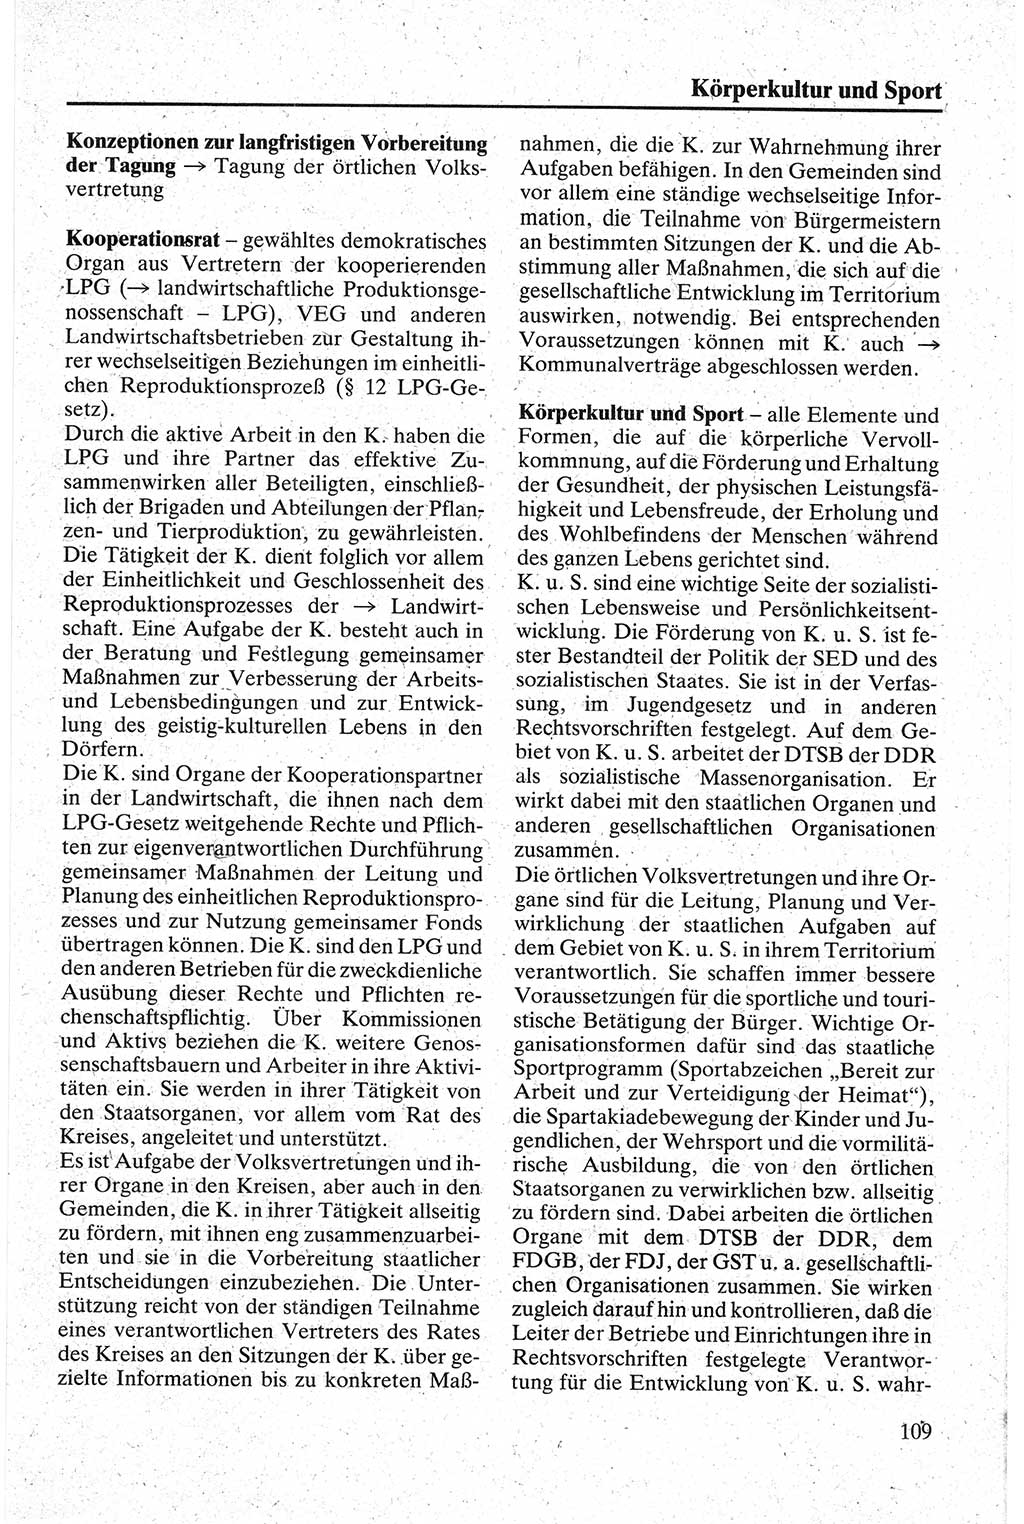 Handbuch für den Abgeordneten [Deutsche Demokratische Republik (DDR)] 1984, Seite 109 (Hb. Abg. DDR 1984, S. 109)